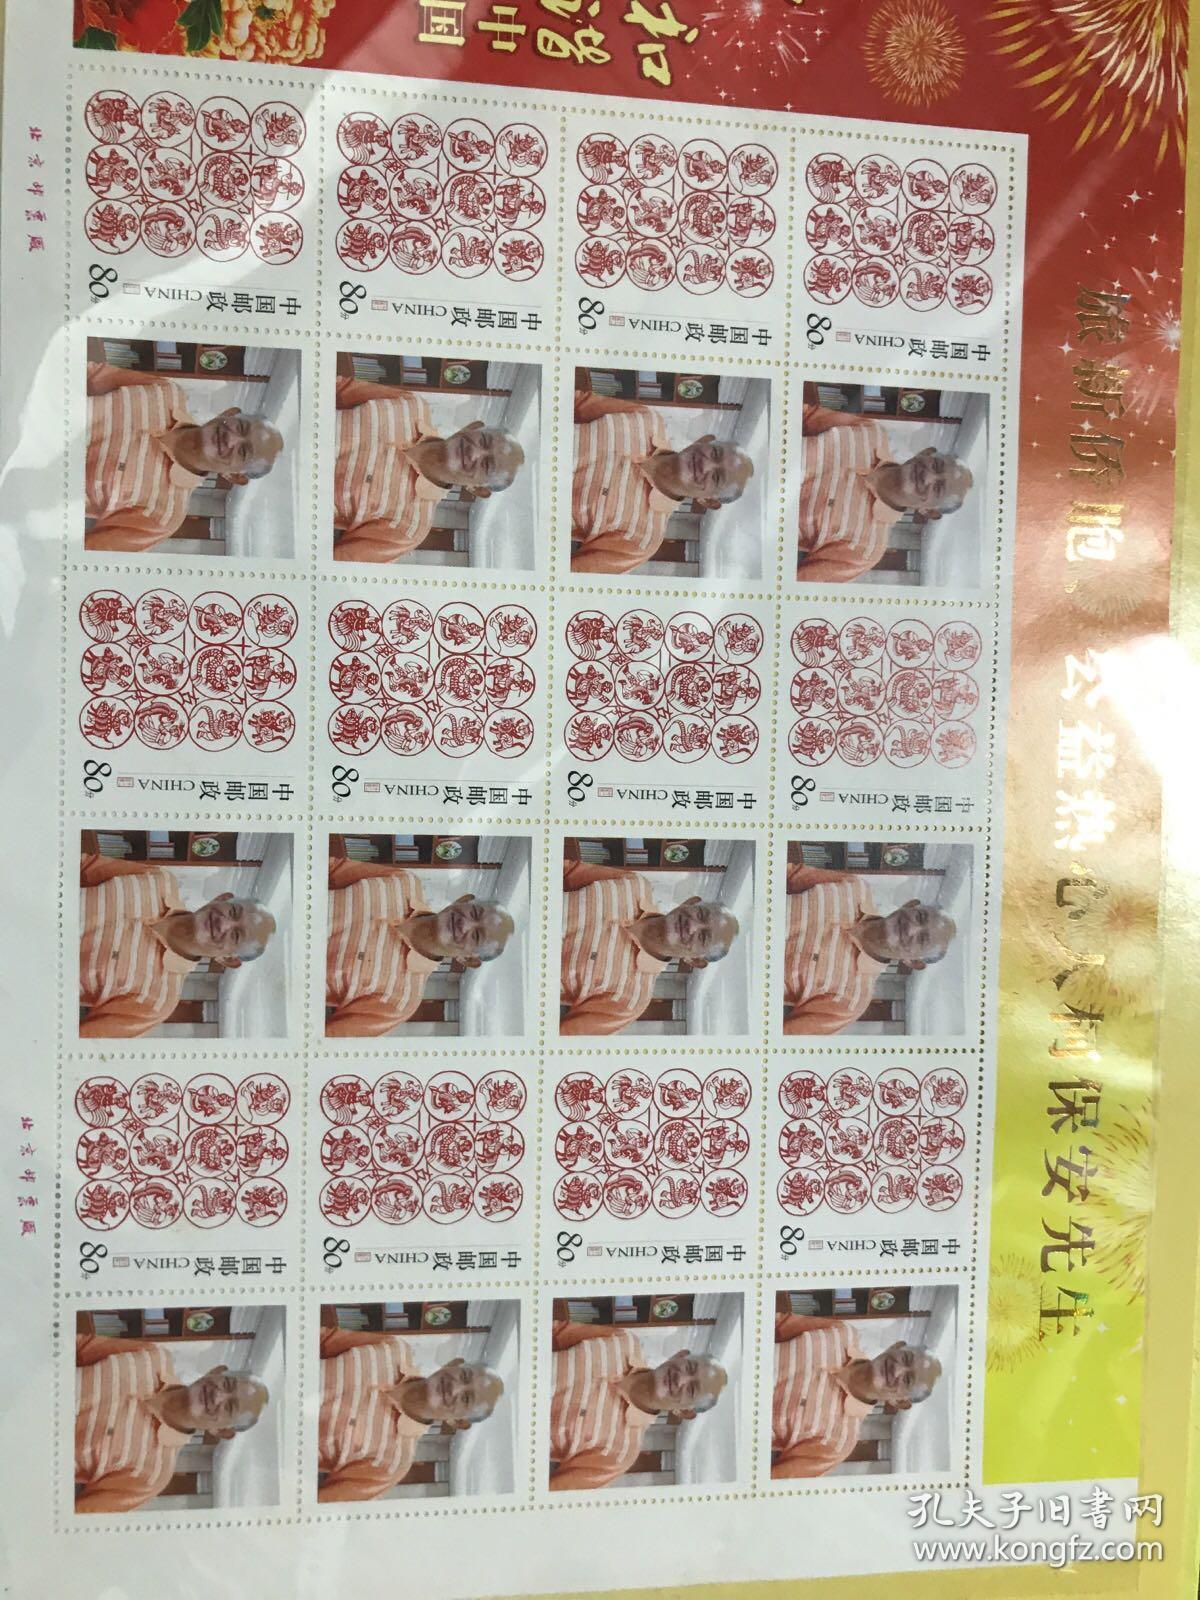 个性化邮票一版